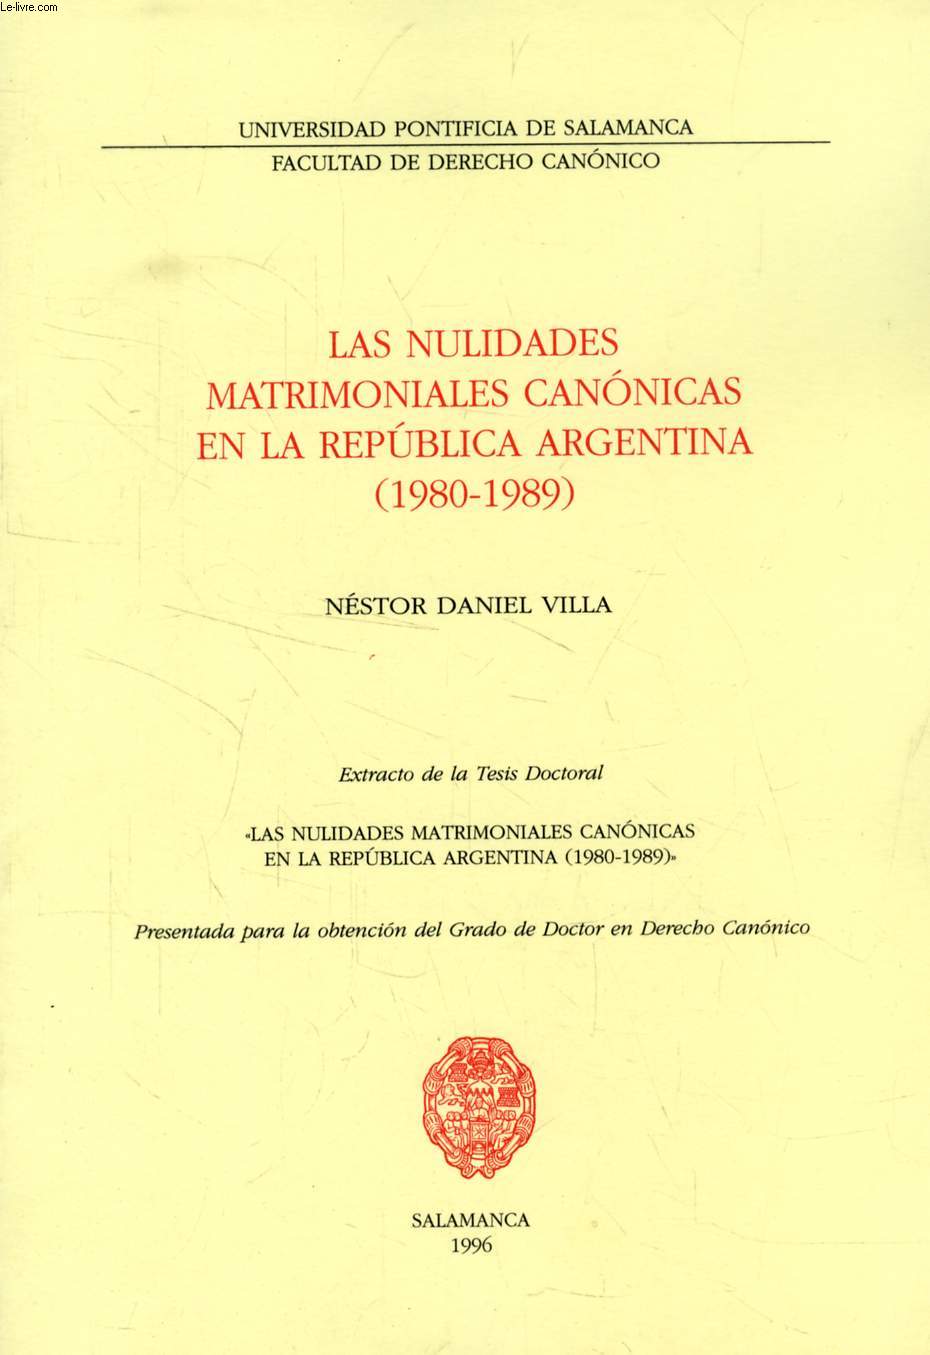 LAS NULIDADES MATRIMONIALES CANONICAS EN LA REPUBLICA ARGENTINA (1980-1989) (EXTRACTO DE LA TESIS)